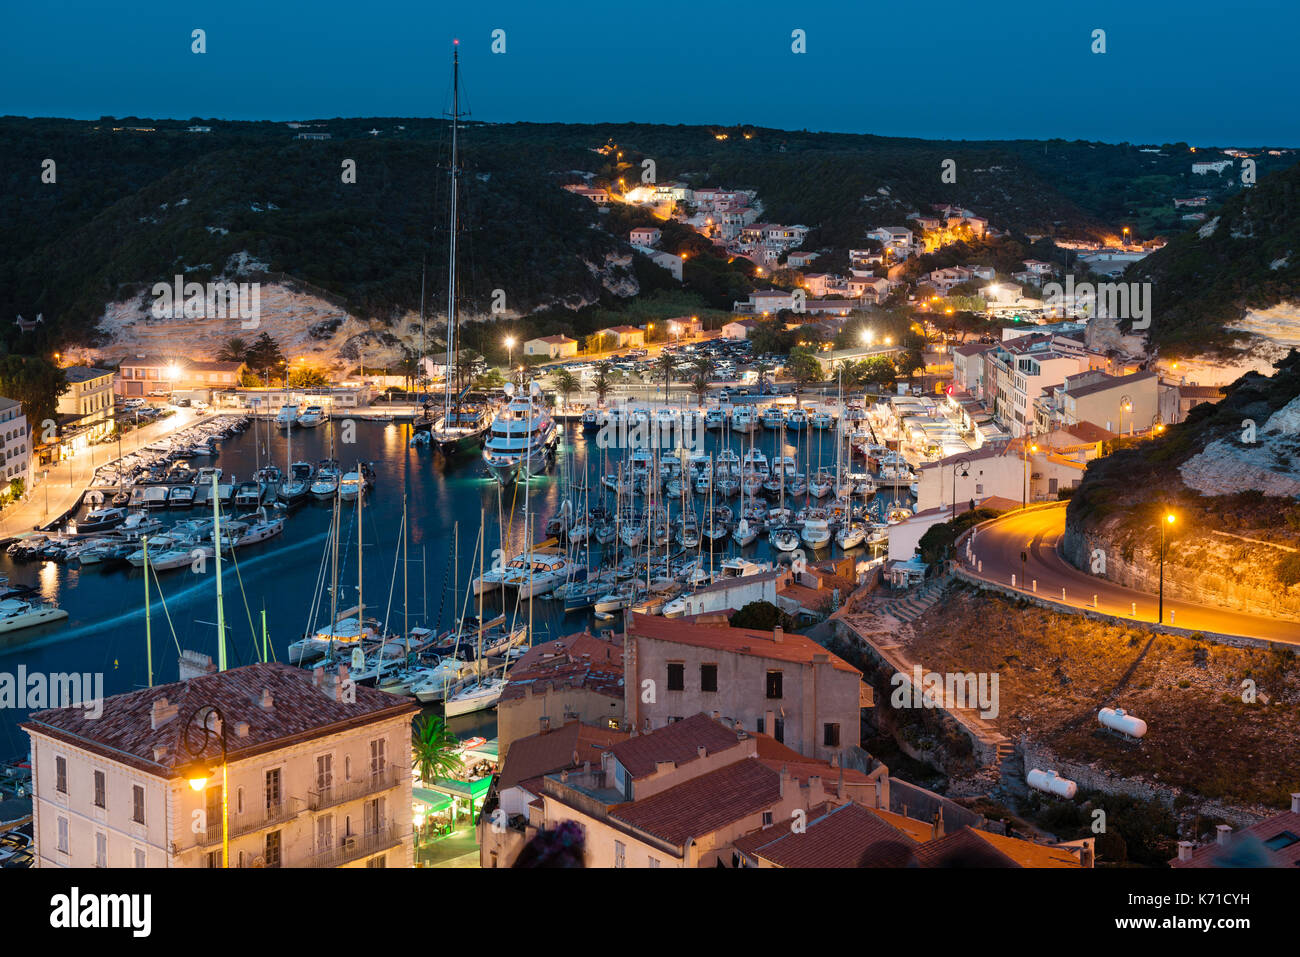 Marina la nuit, ville historique de Bonifacio, corse, france Banque D'Images